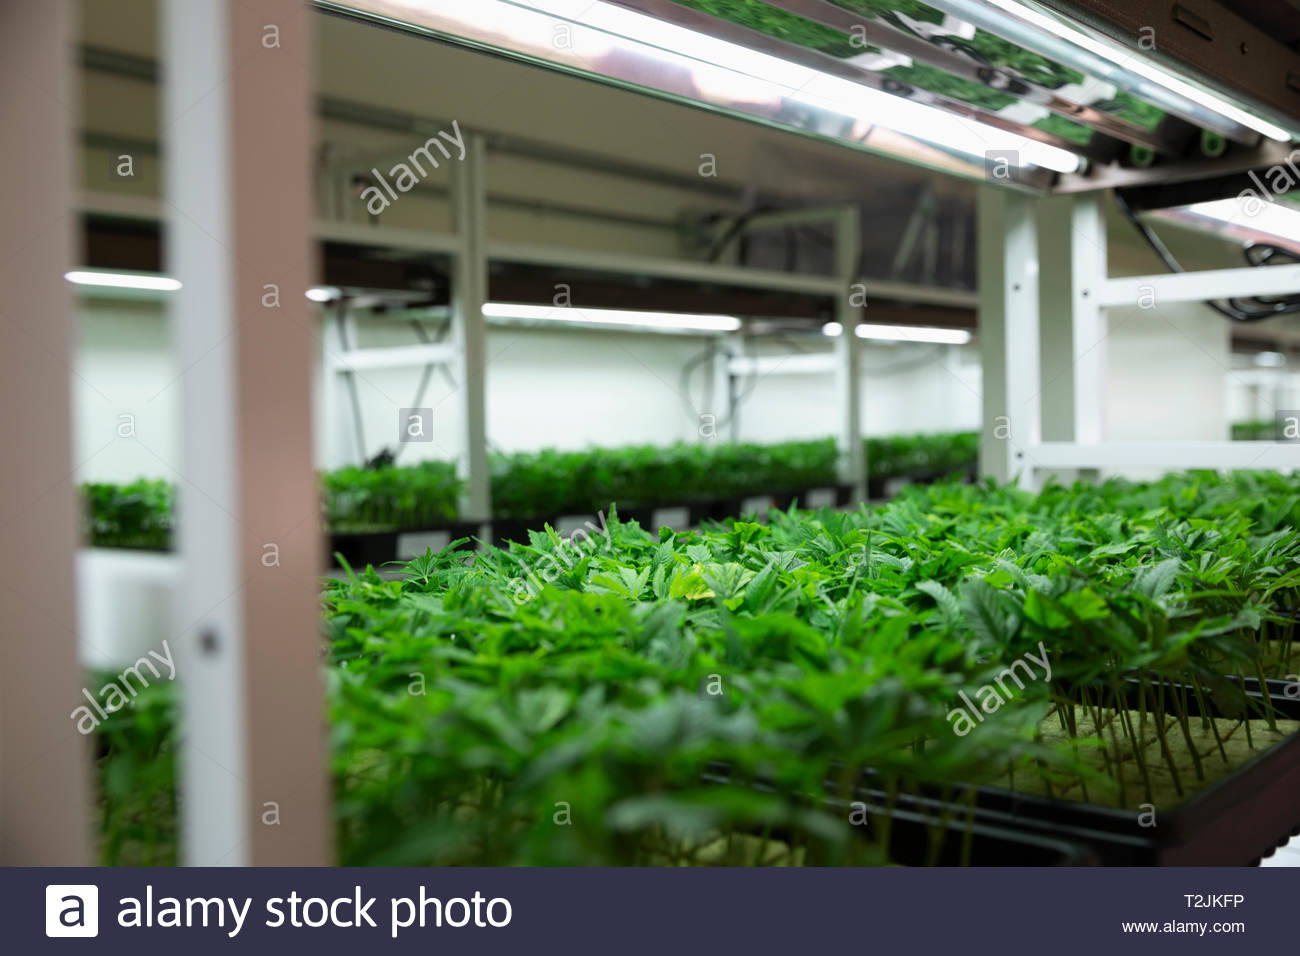 Las plántulas de cannabis en incubación Foto de stock